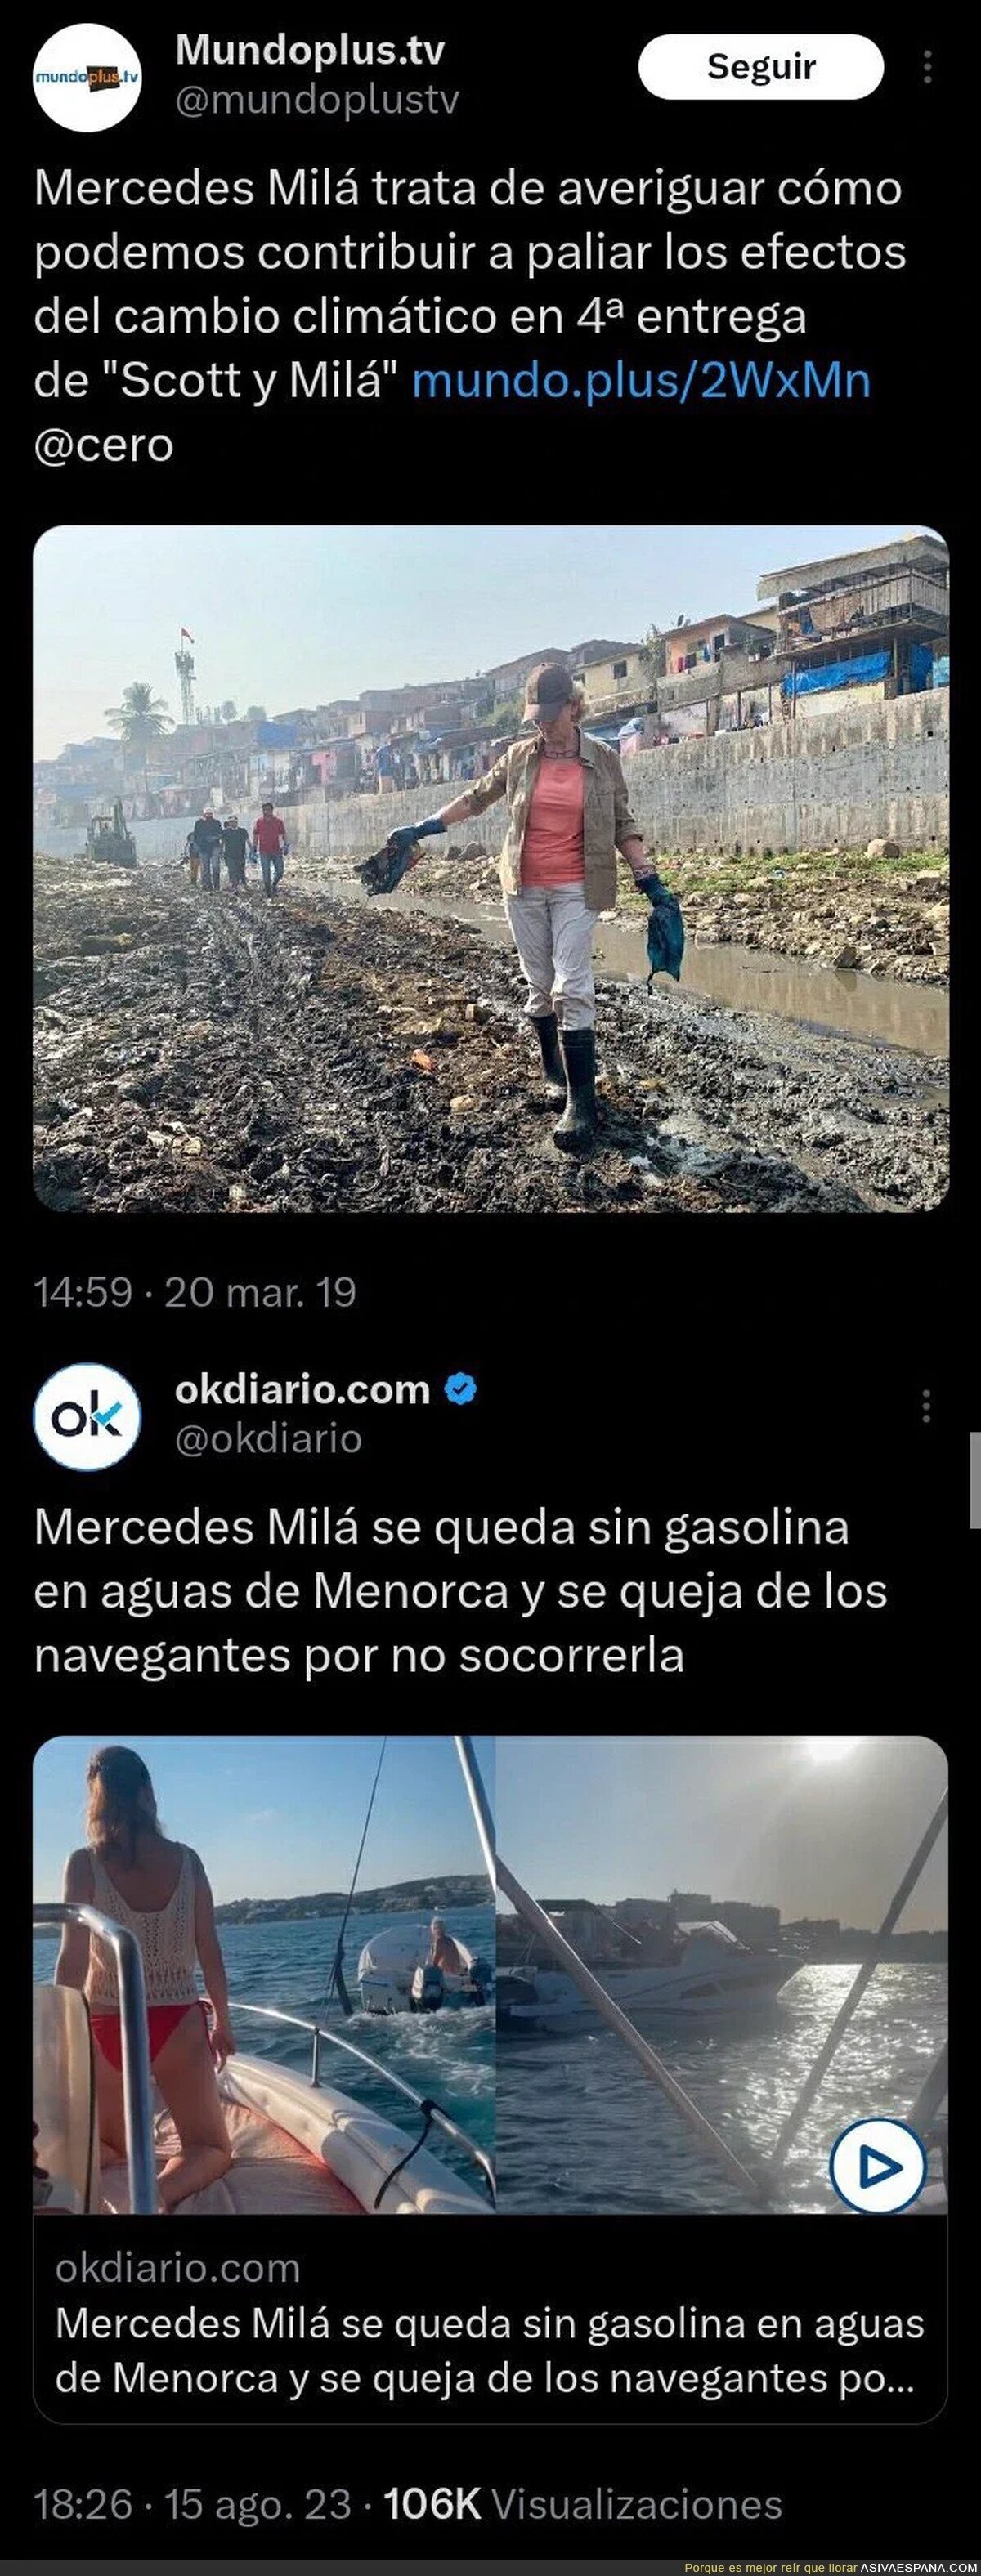 El doble rasero de Mercedes Milá con la contaminación del Mundo